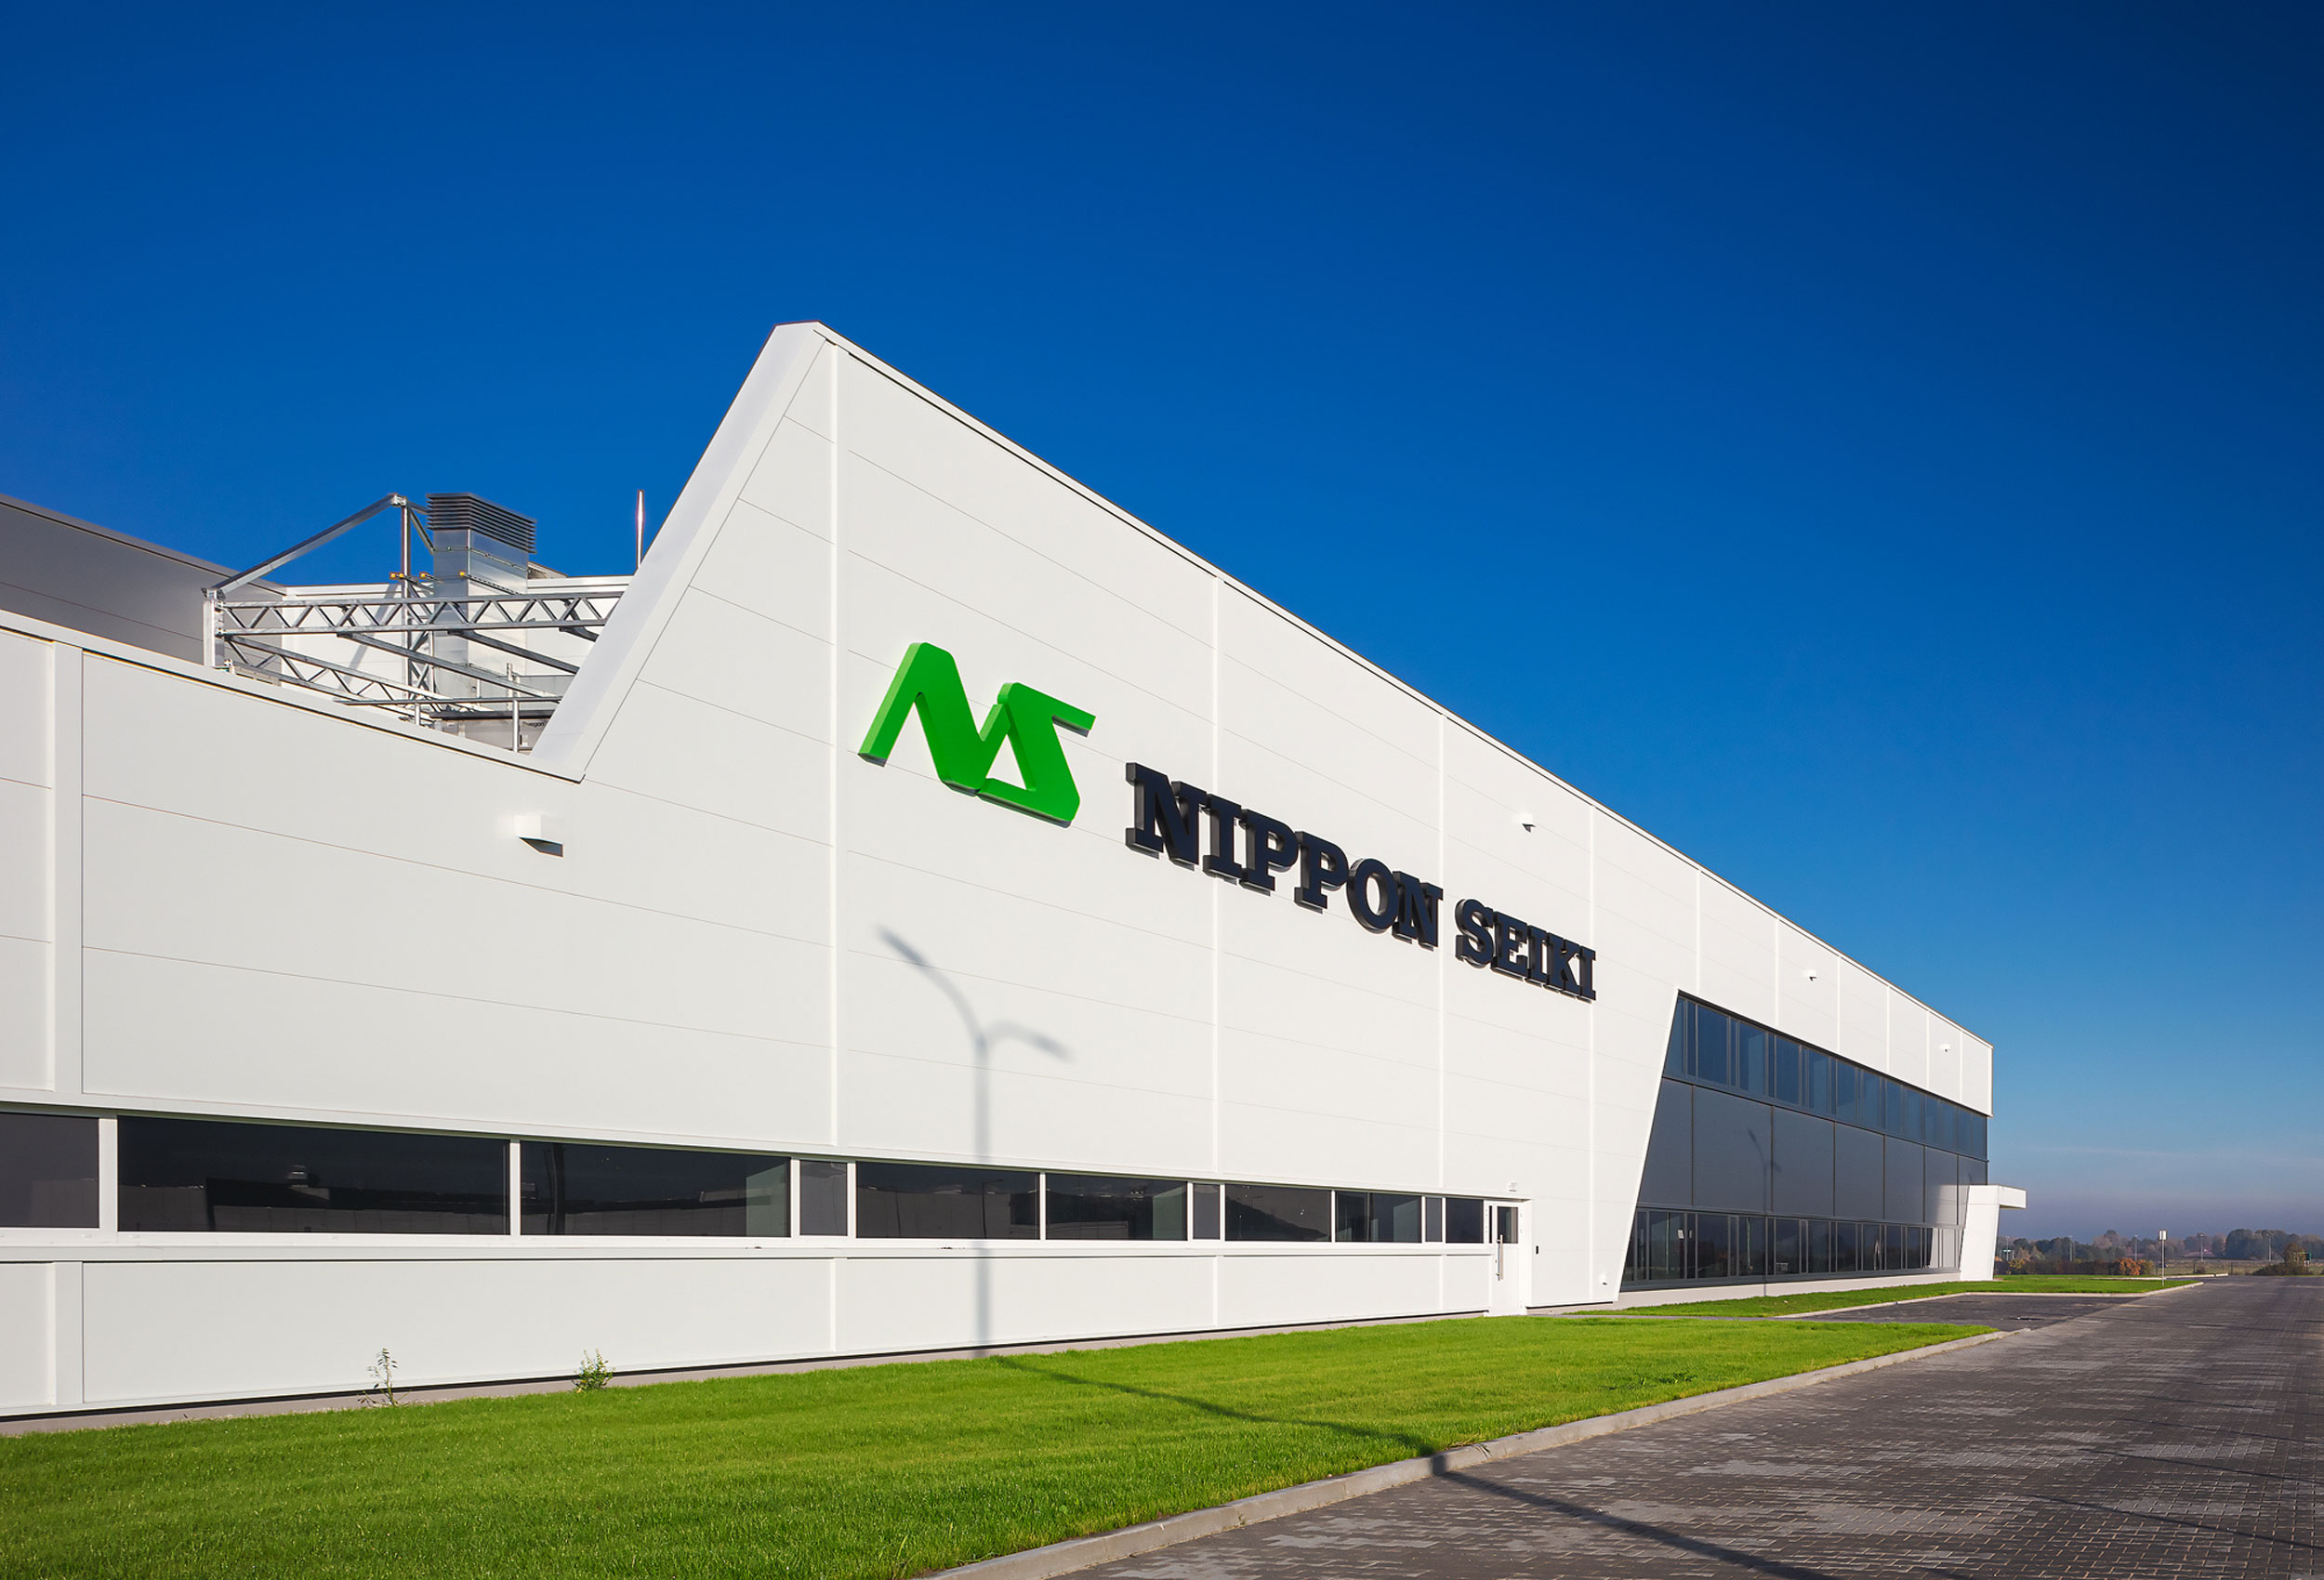 Moderne Firmenfassade von Nippon Seiki mit großem Logo unter blauem Himmel, umgeben von einer gepflegten Grünfläche.